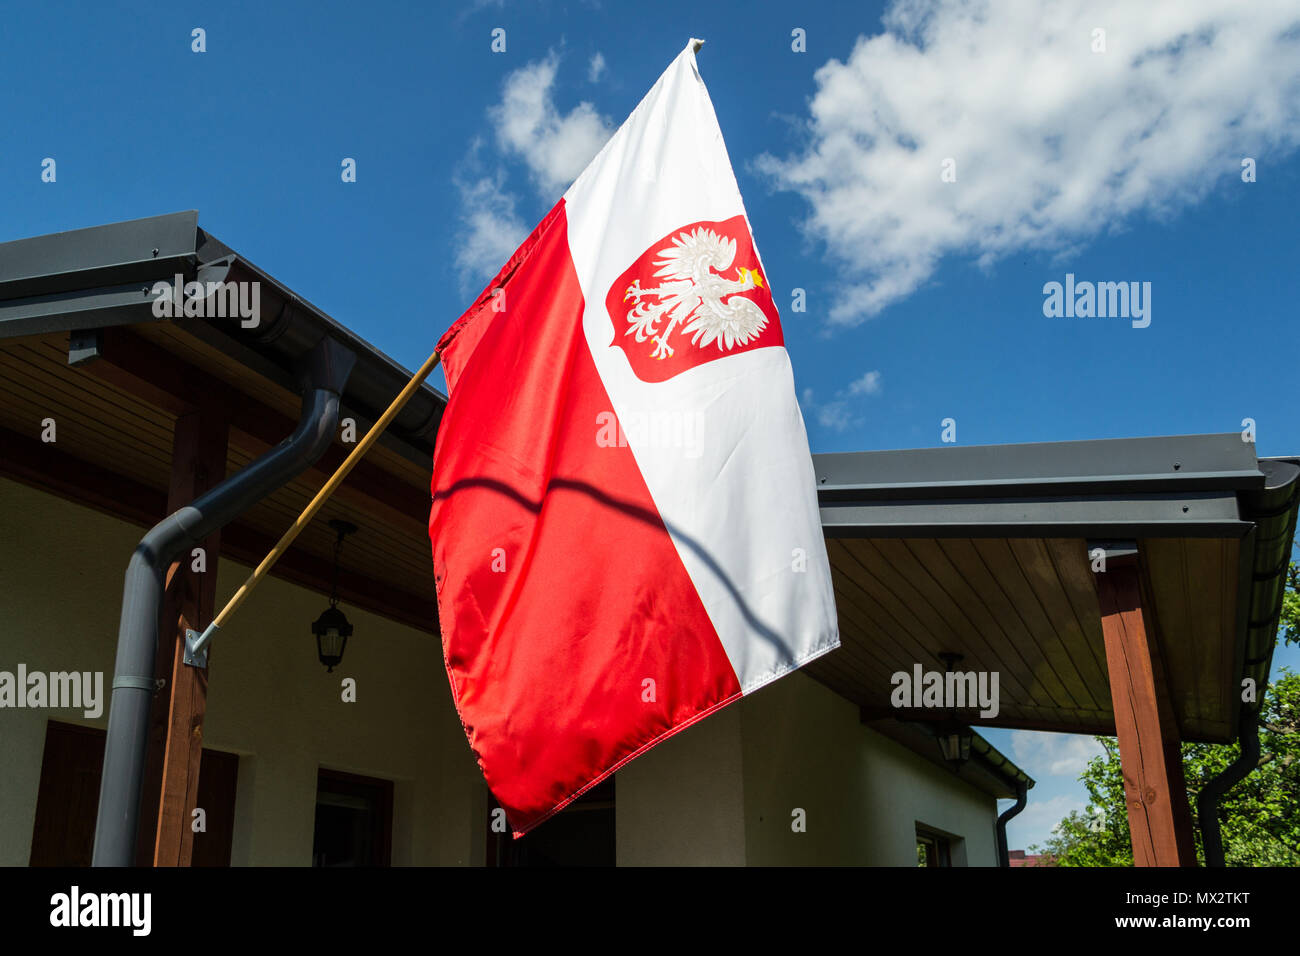 Le drapeau national de la Pologne Banque D'Images